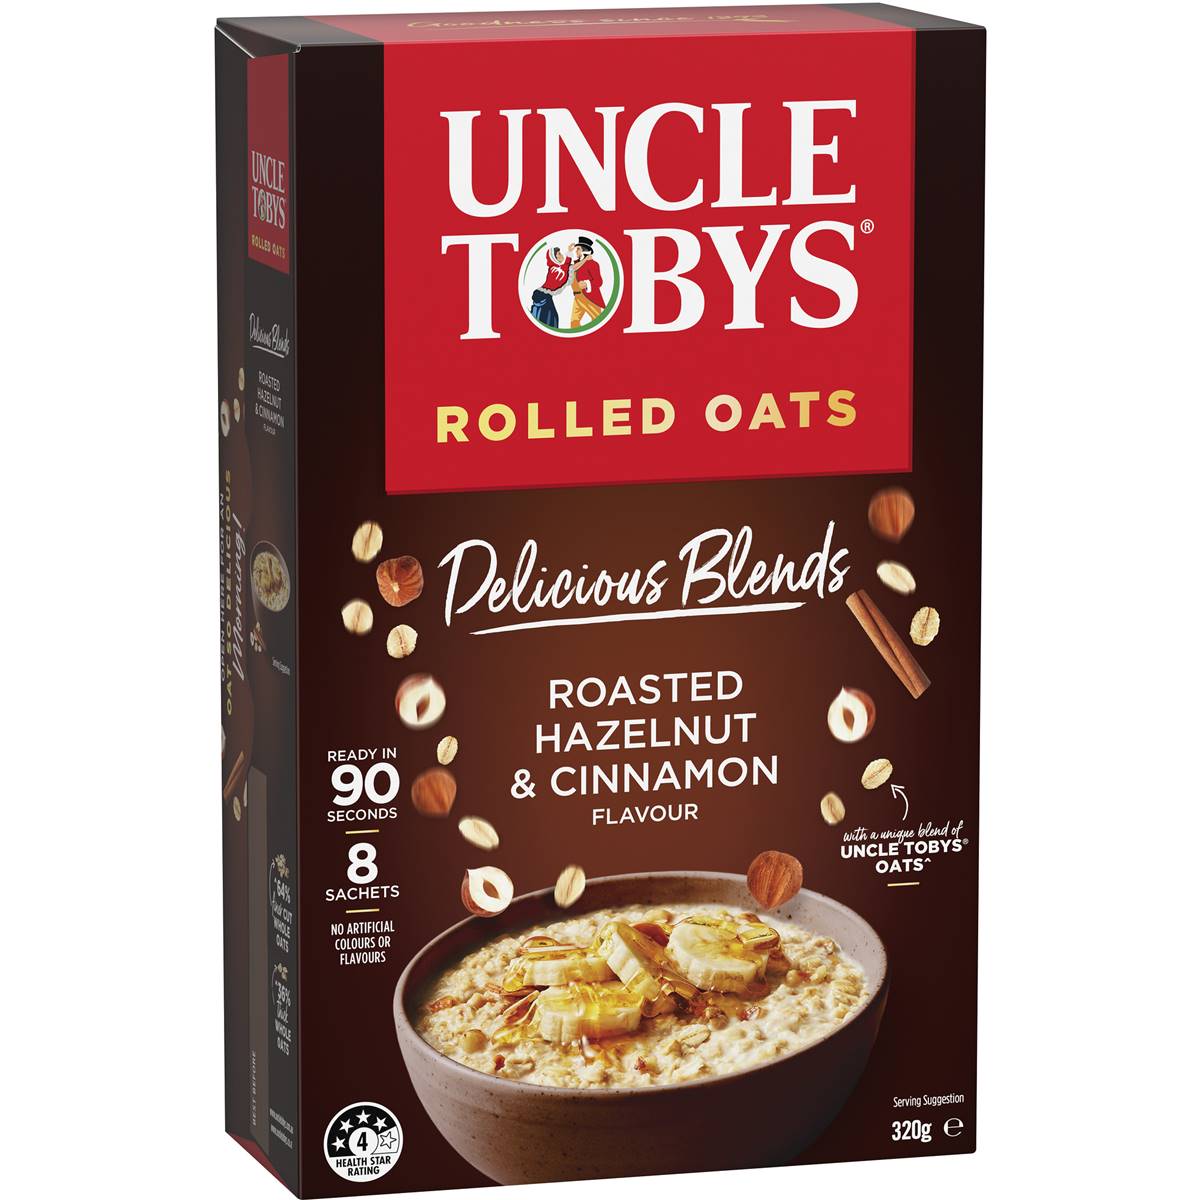 Calories in Uncle Tobys Oats Porridge Delicious Blends Hazelnut & Cinnamon